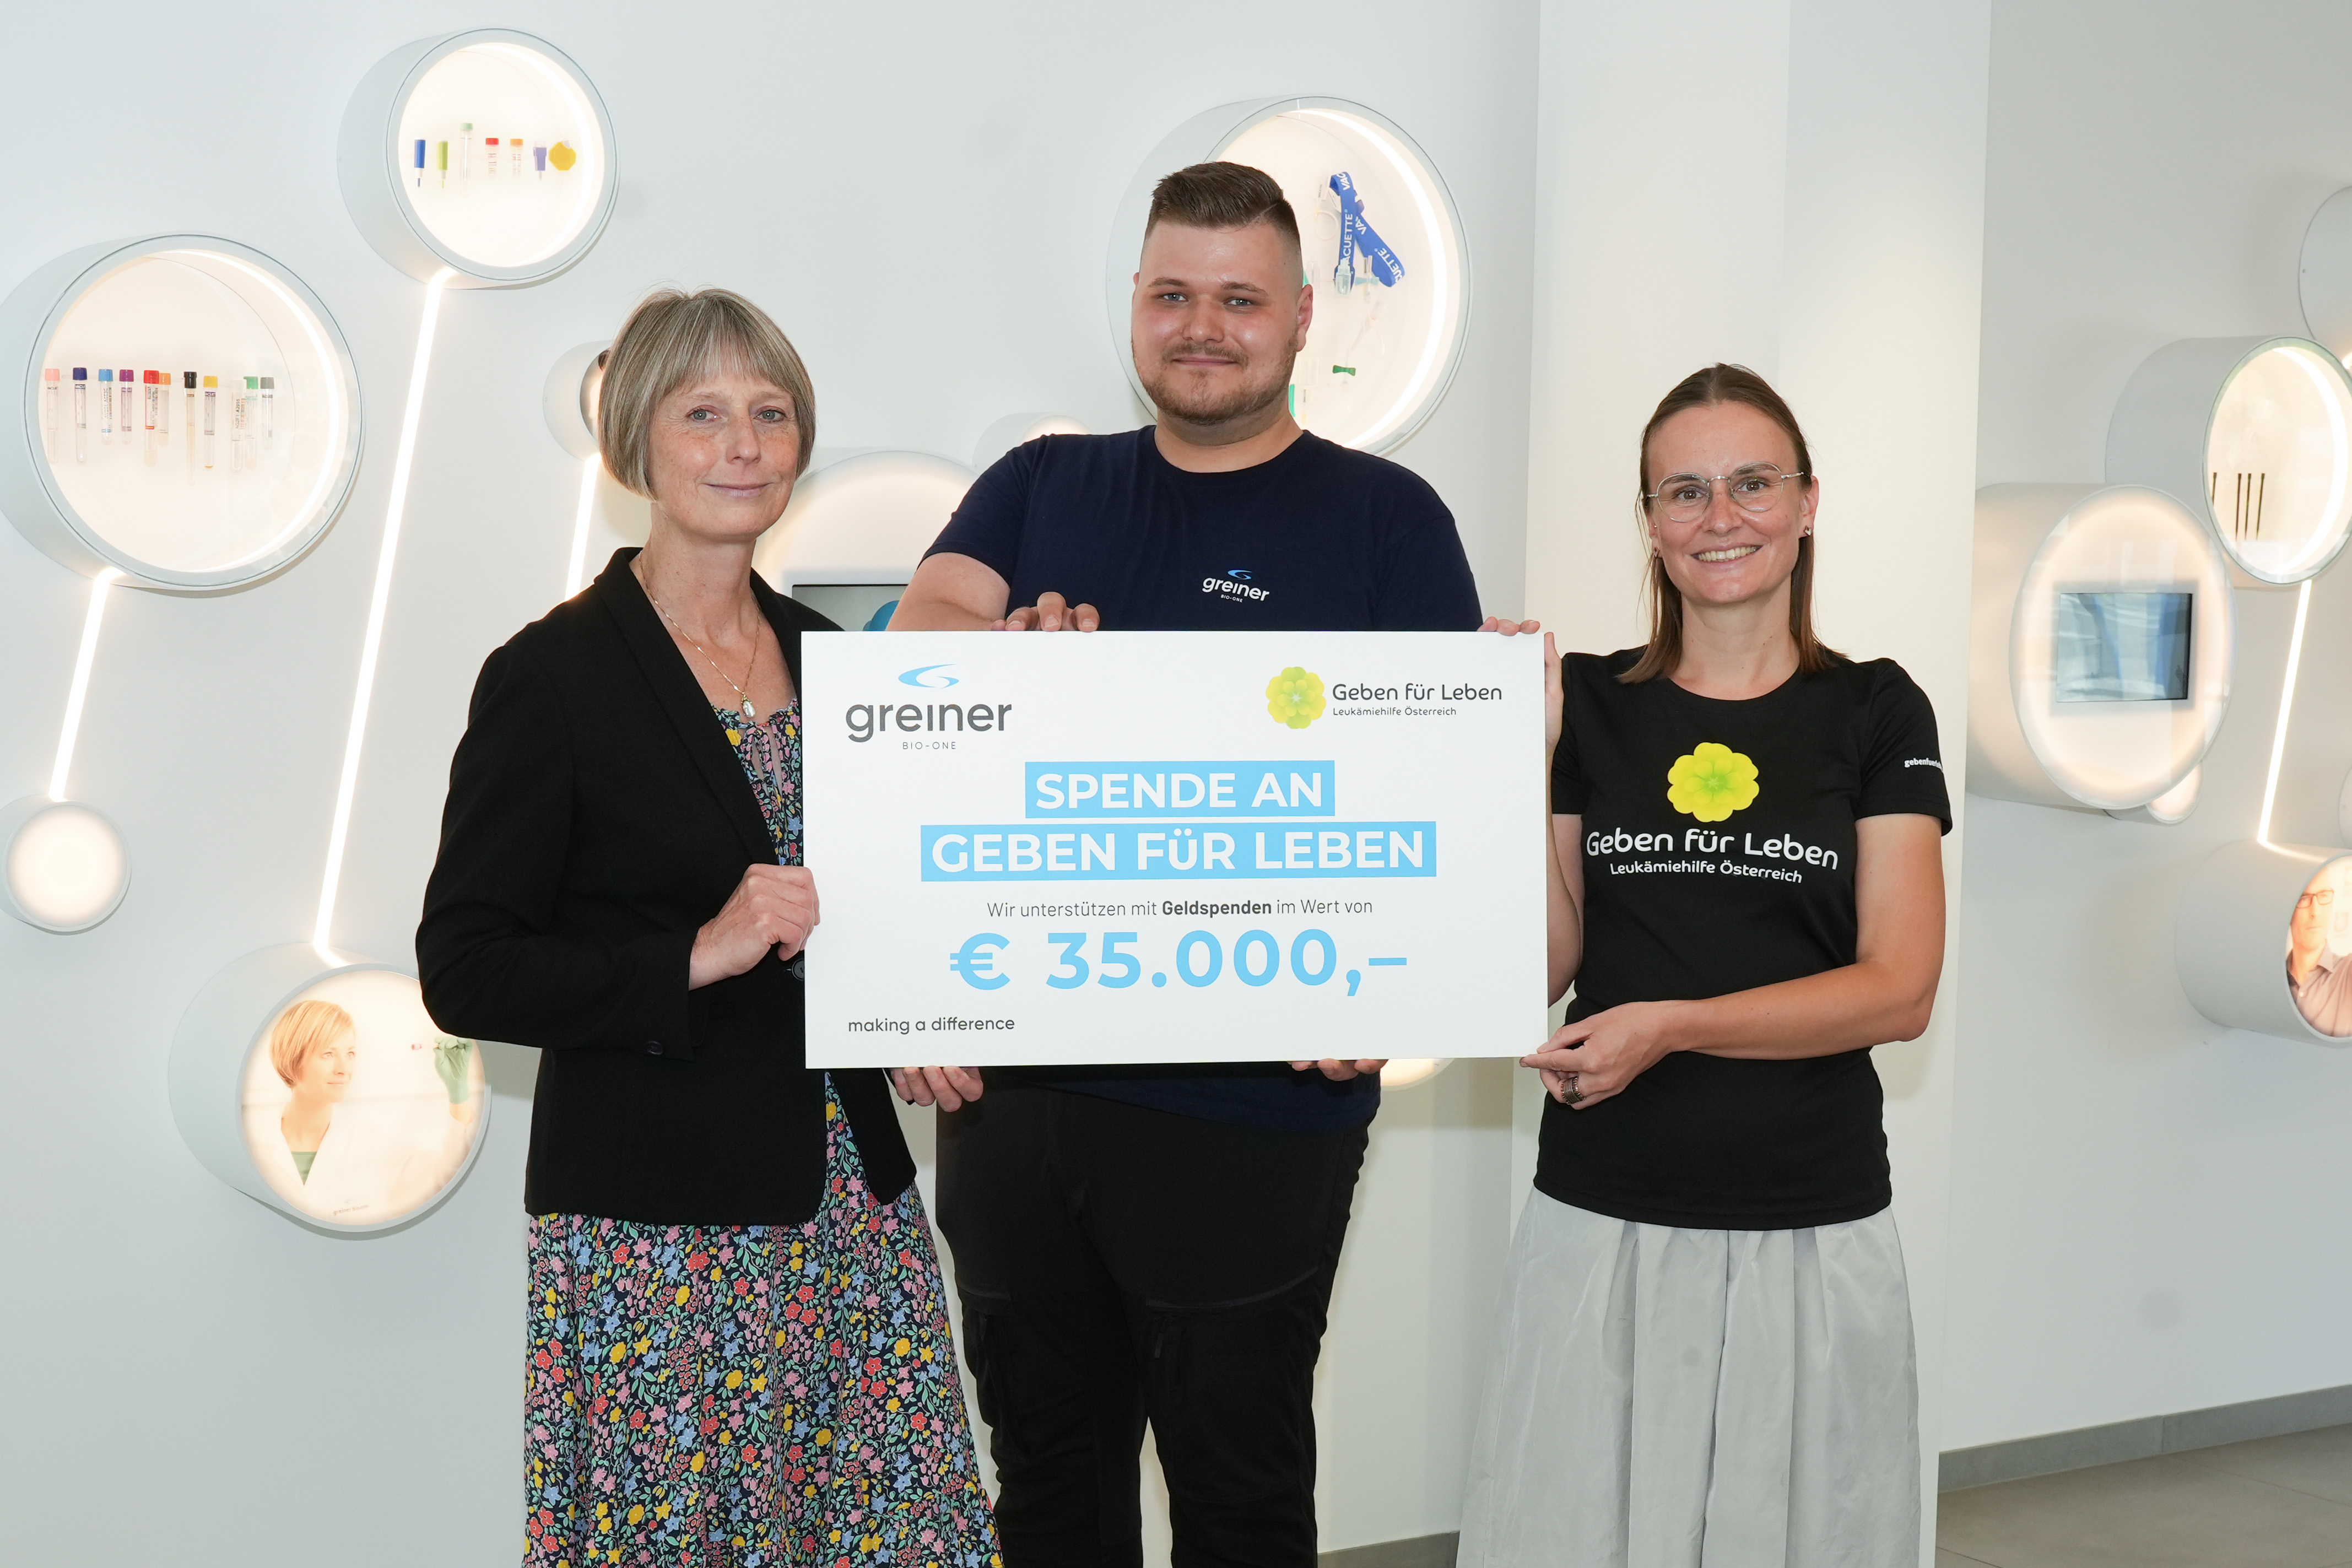 Greiner Bio-One supports the association “Geben für Leben – Leukaemia Aid Austria“ for the fourth year in a row